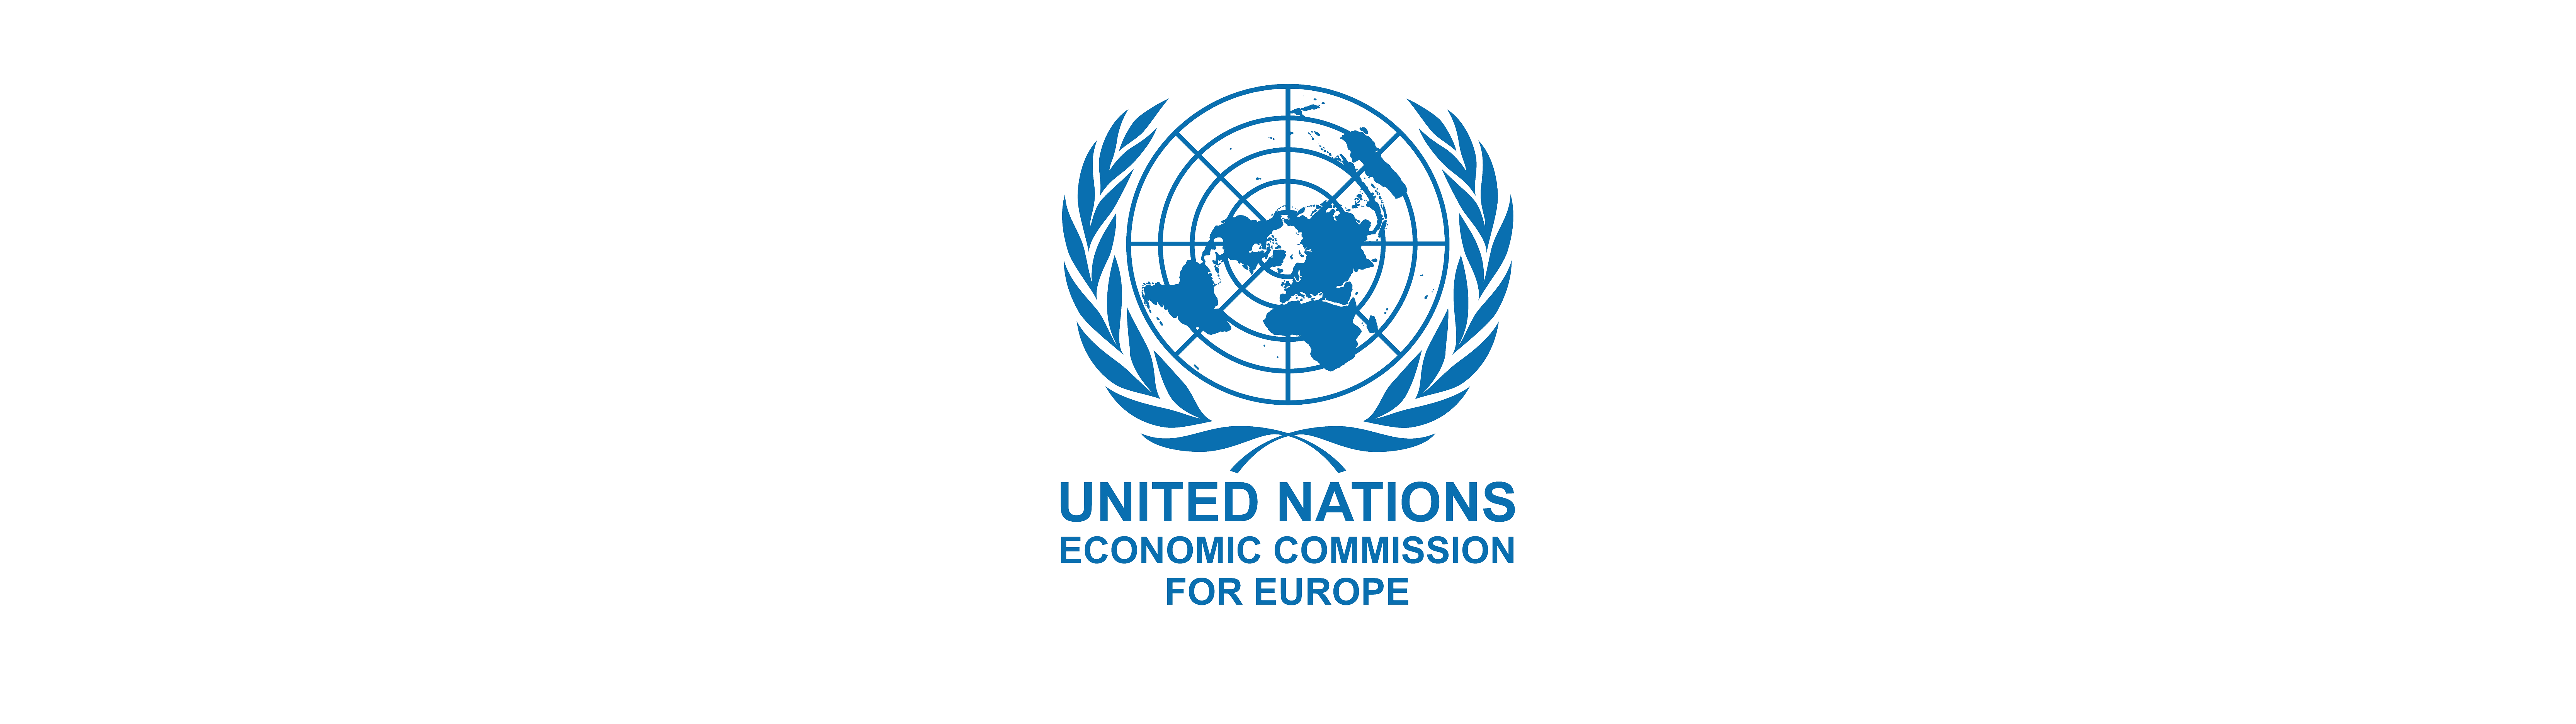 Еэк оон. Европейская комиссия ООН. Экономическая комиссия ООН. Лого европейской экономической комиссии ООН. Логотип ООН.